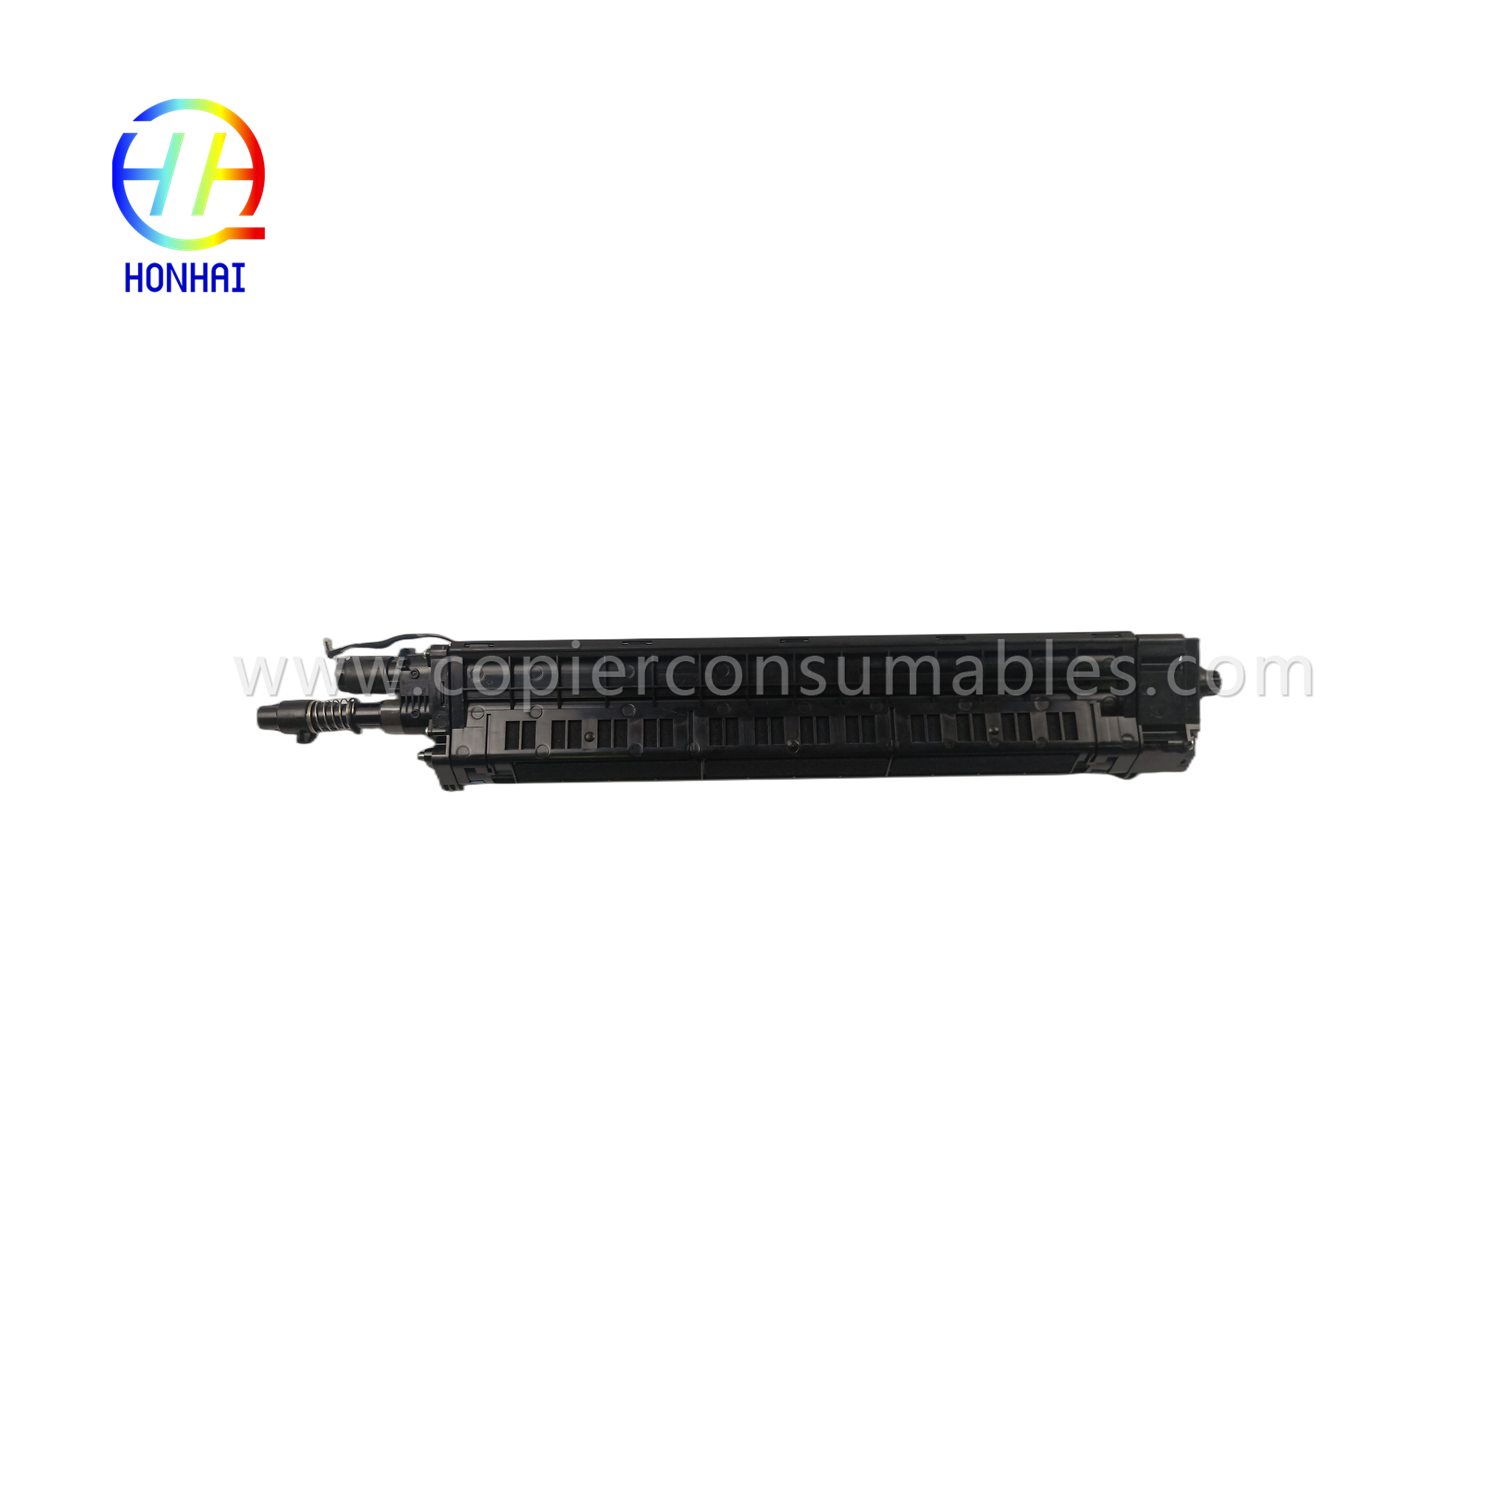 Untwikkelingsienheid foar Samsung JC96-12519A Cyan X7400 X7500 X7600 Sl-x7400 Sl-x7500 Sl-x7600 Developer Cartridge